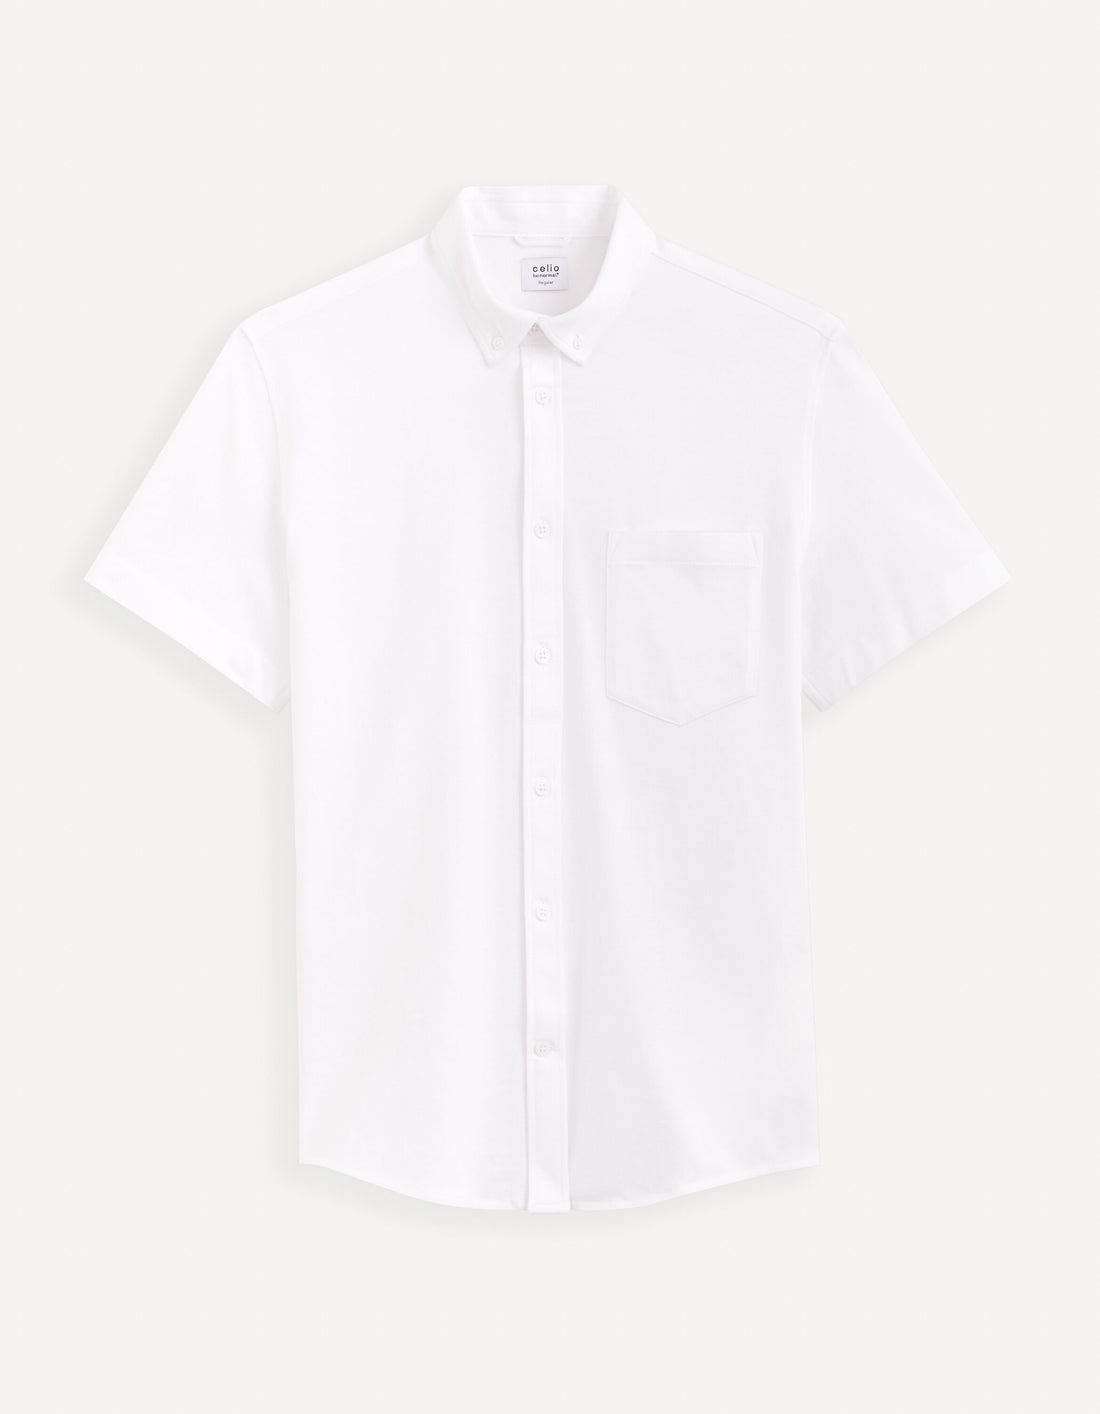 Regular 100% Cotton Pique Knit Shirt_BARIK_WHITE_02